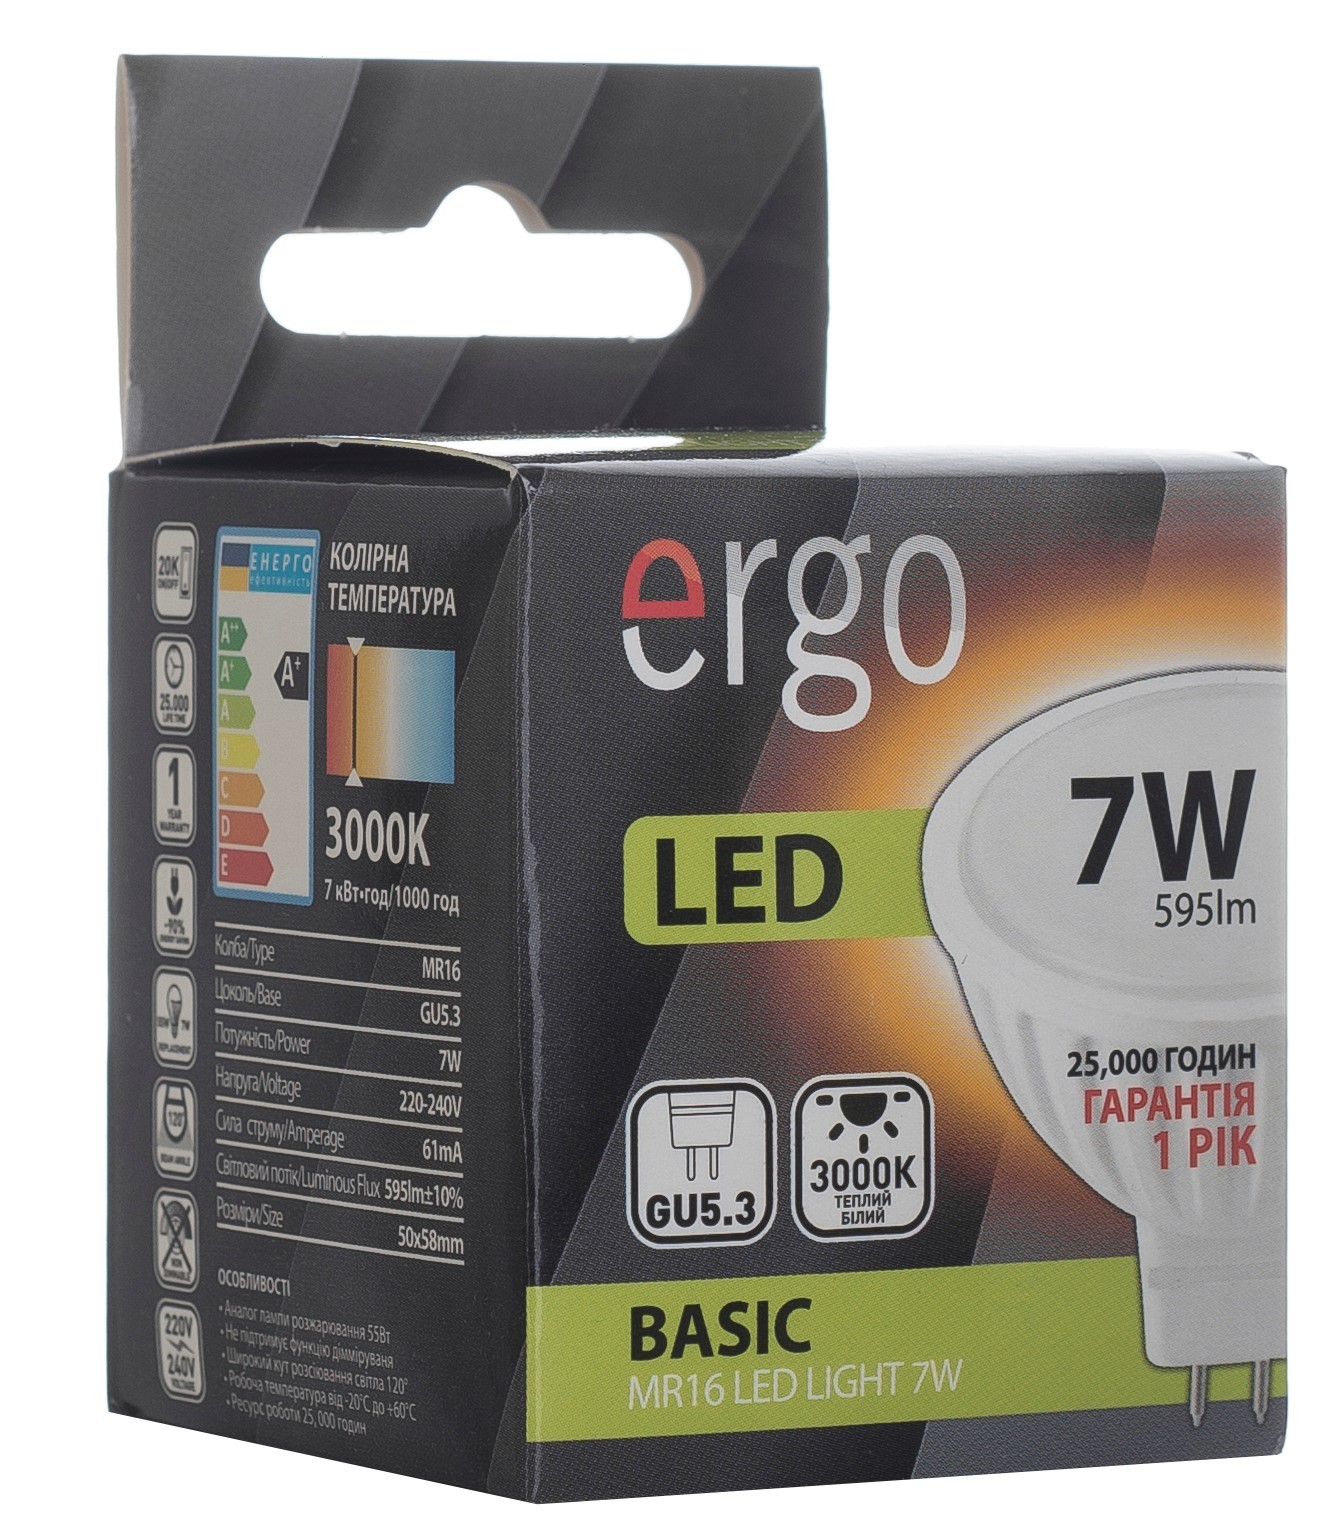 в продаже LED Лампа Ergo Basic MR16 - фото 3